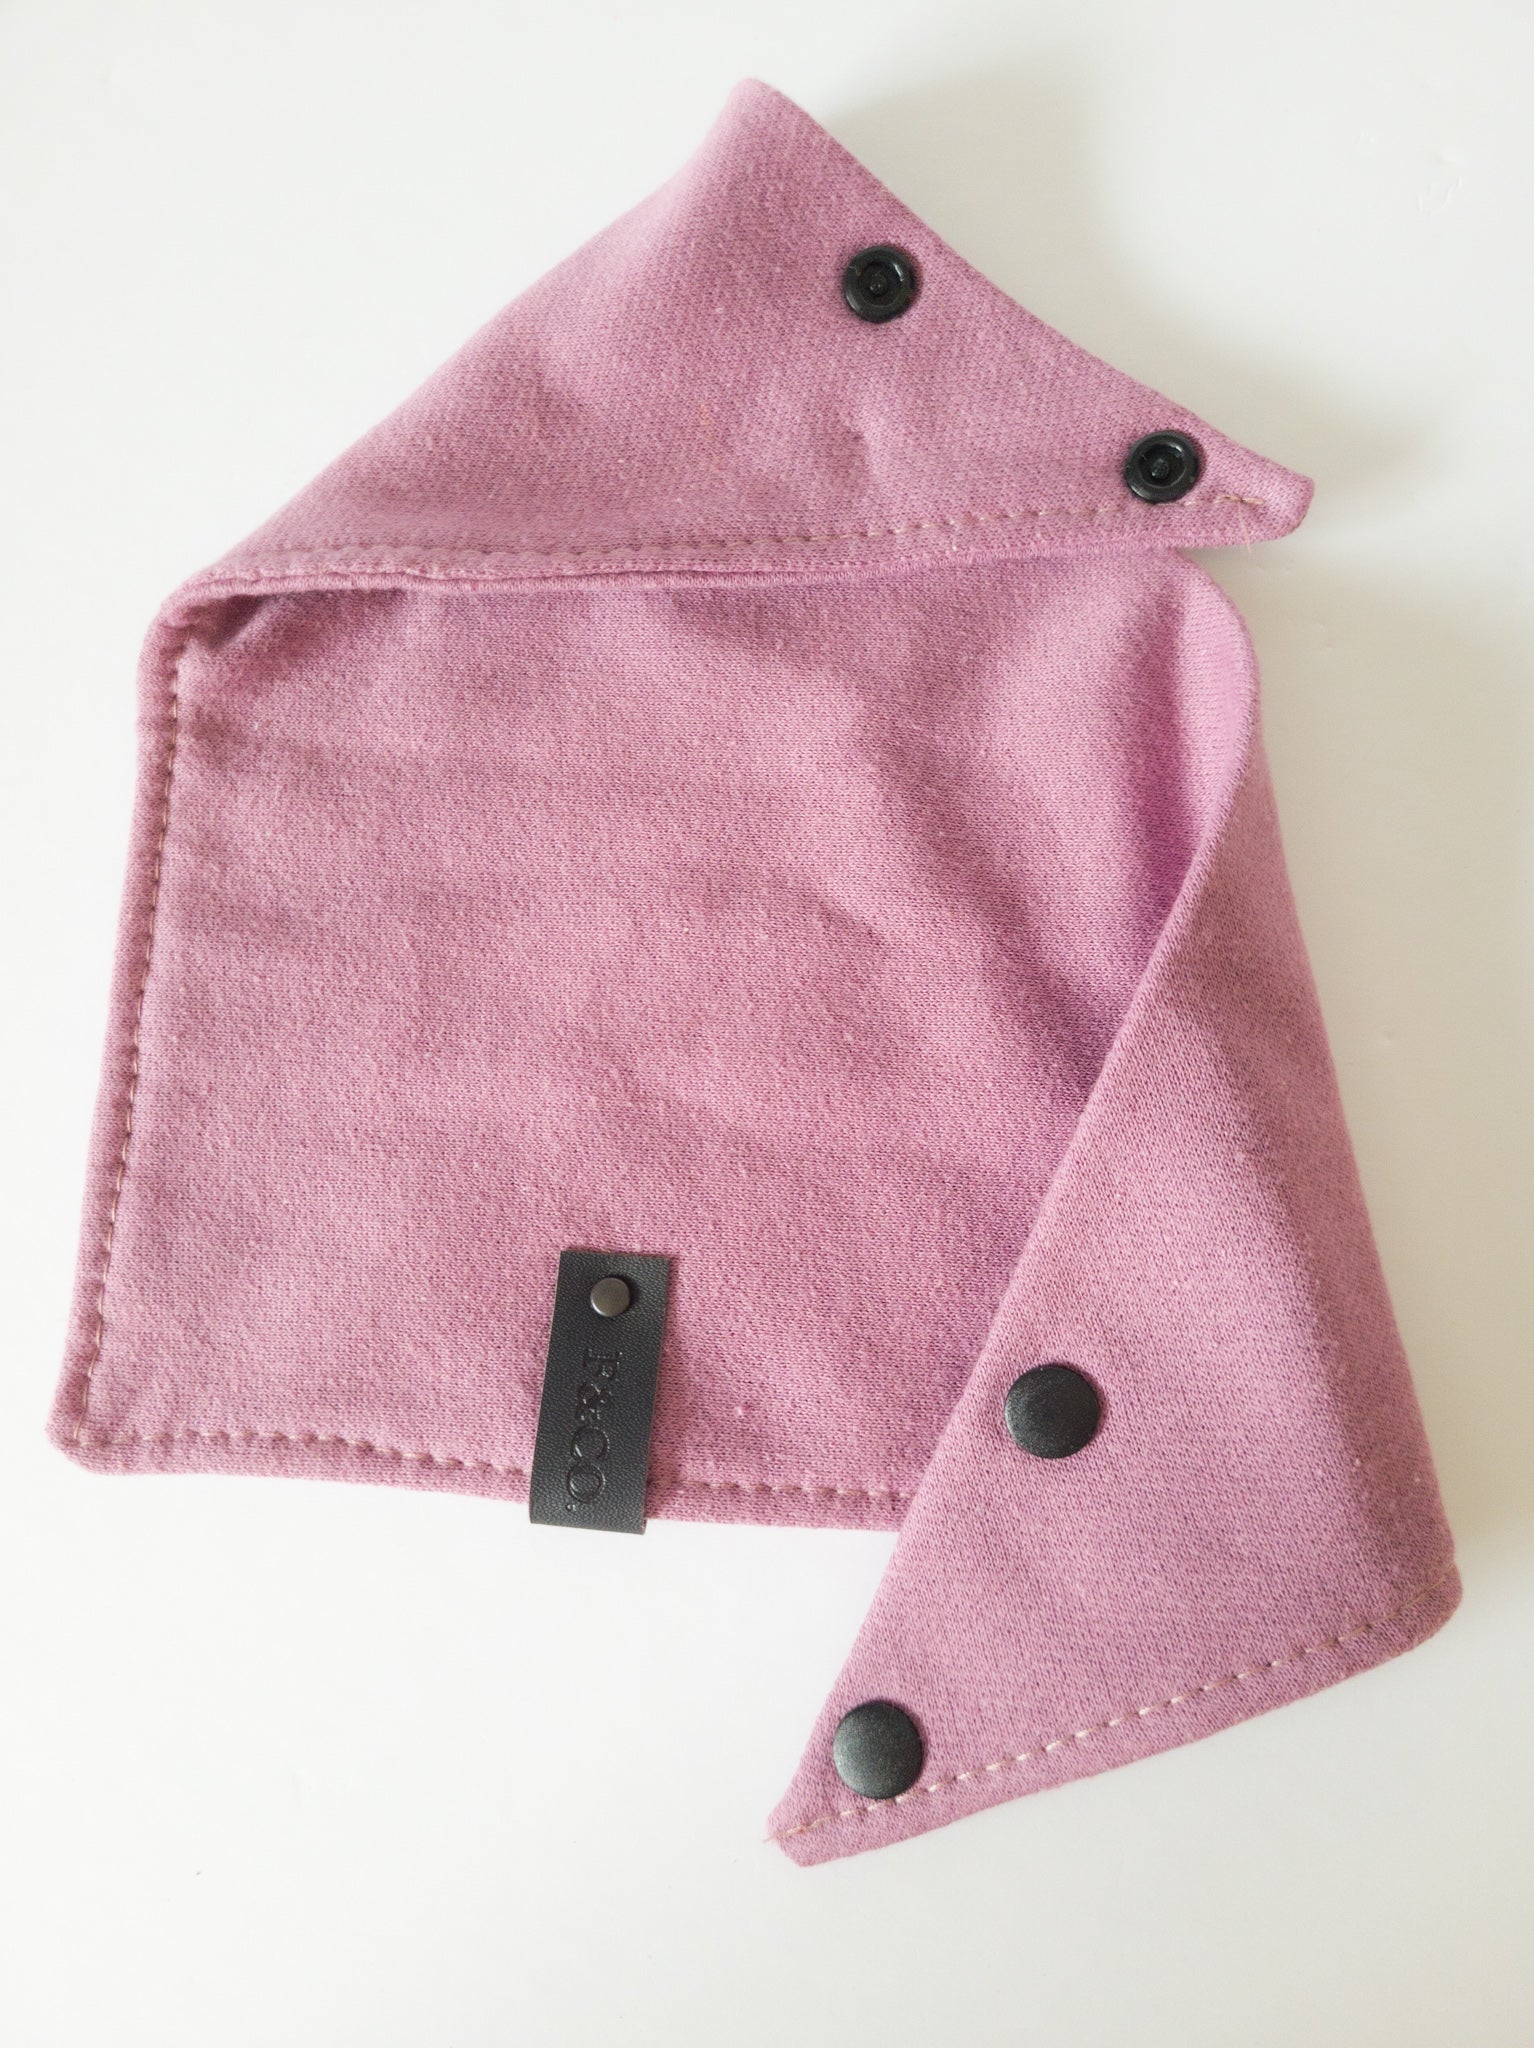 Bandanas de coton ouaté violet rosé ouvert avec étiquette de cuir noir végan et boutons pressions en plastique noir mats.